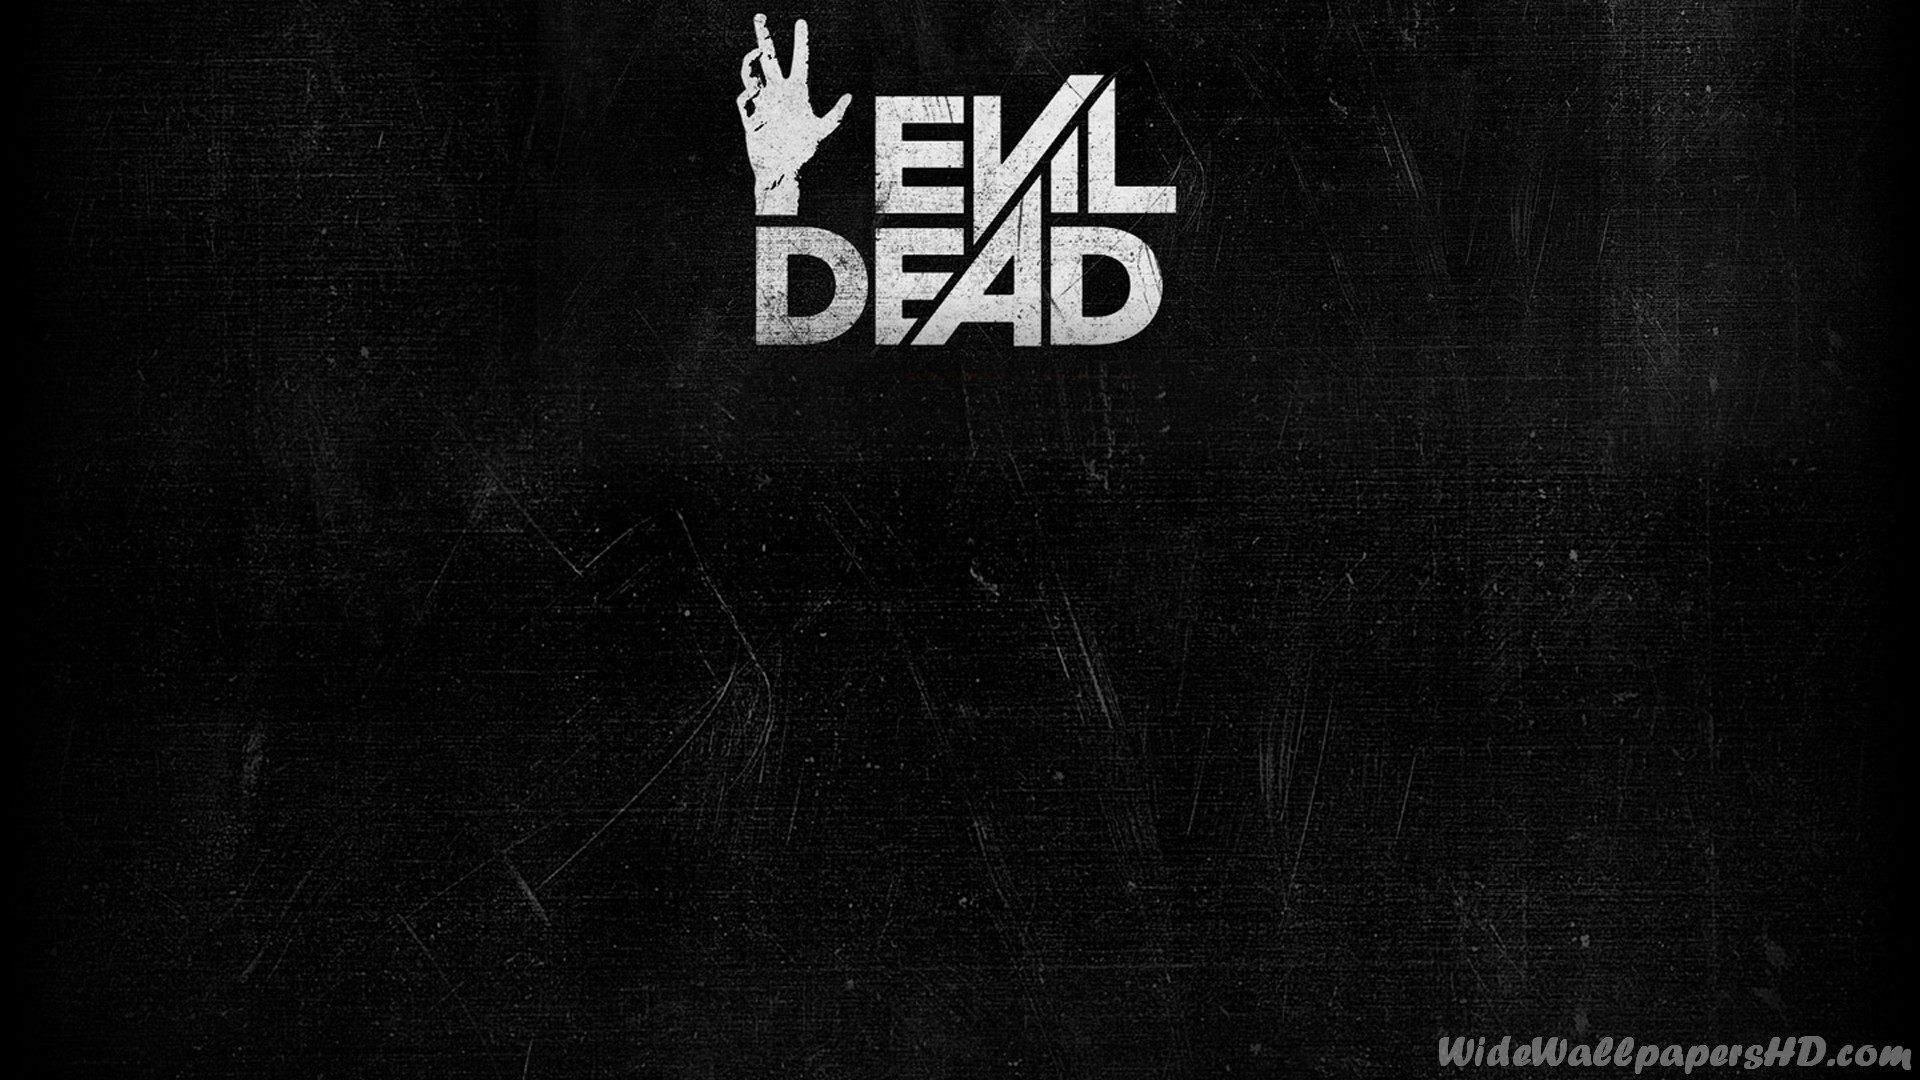 Evil Dead Logo Black Wide Wallpaper WidewallpaperHD